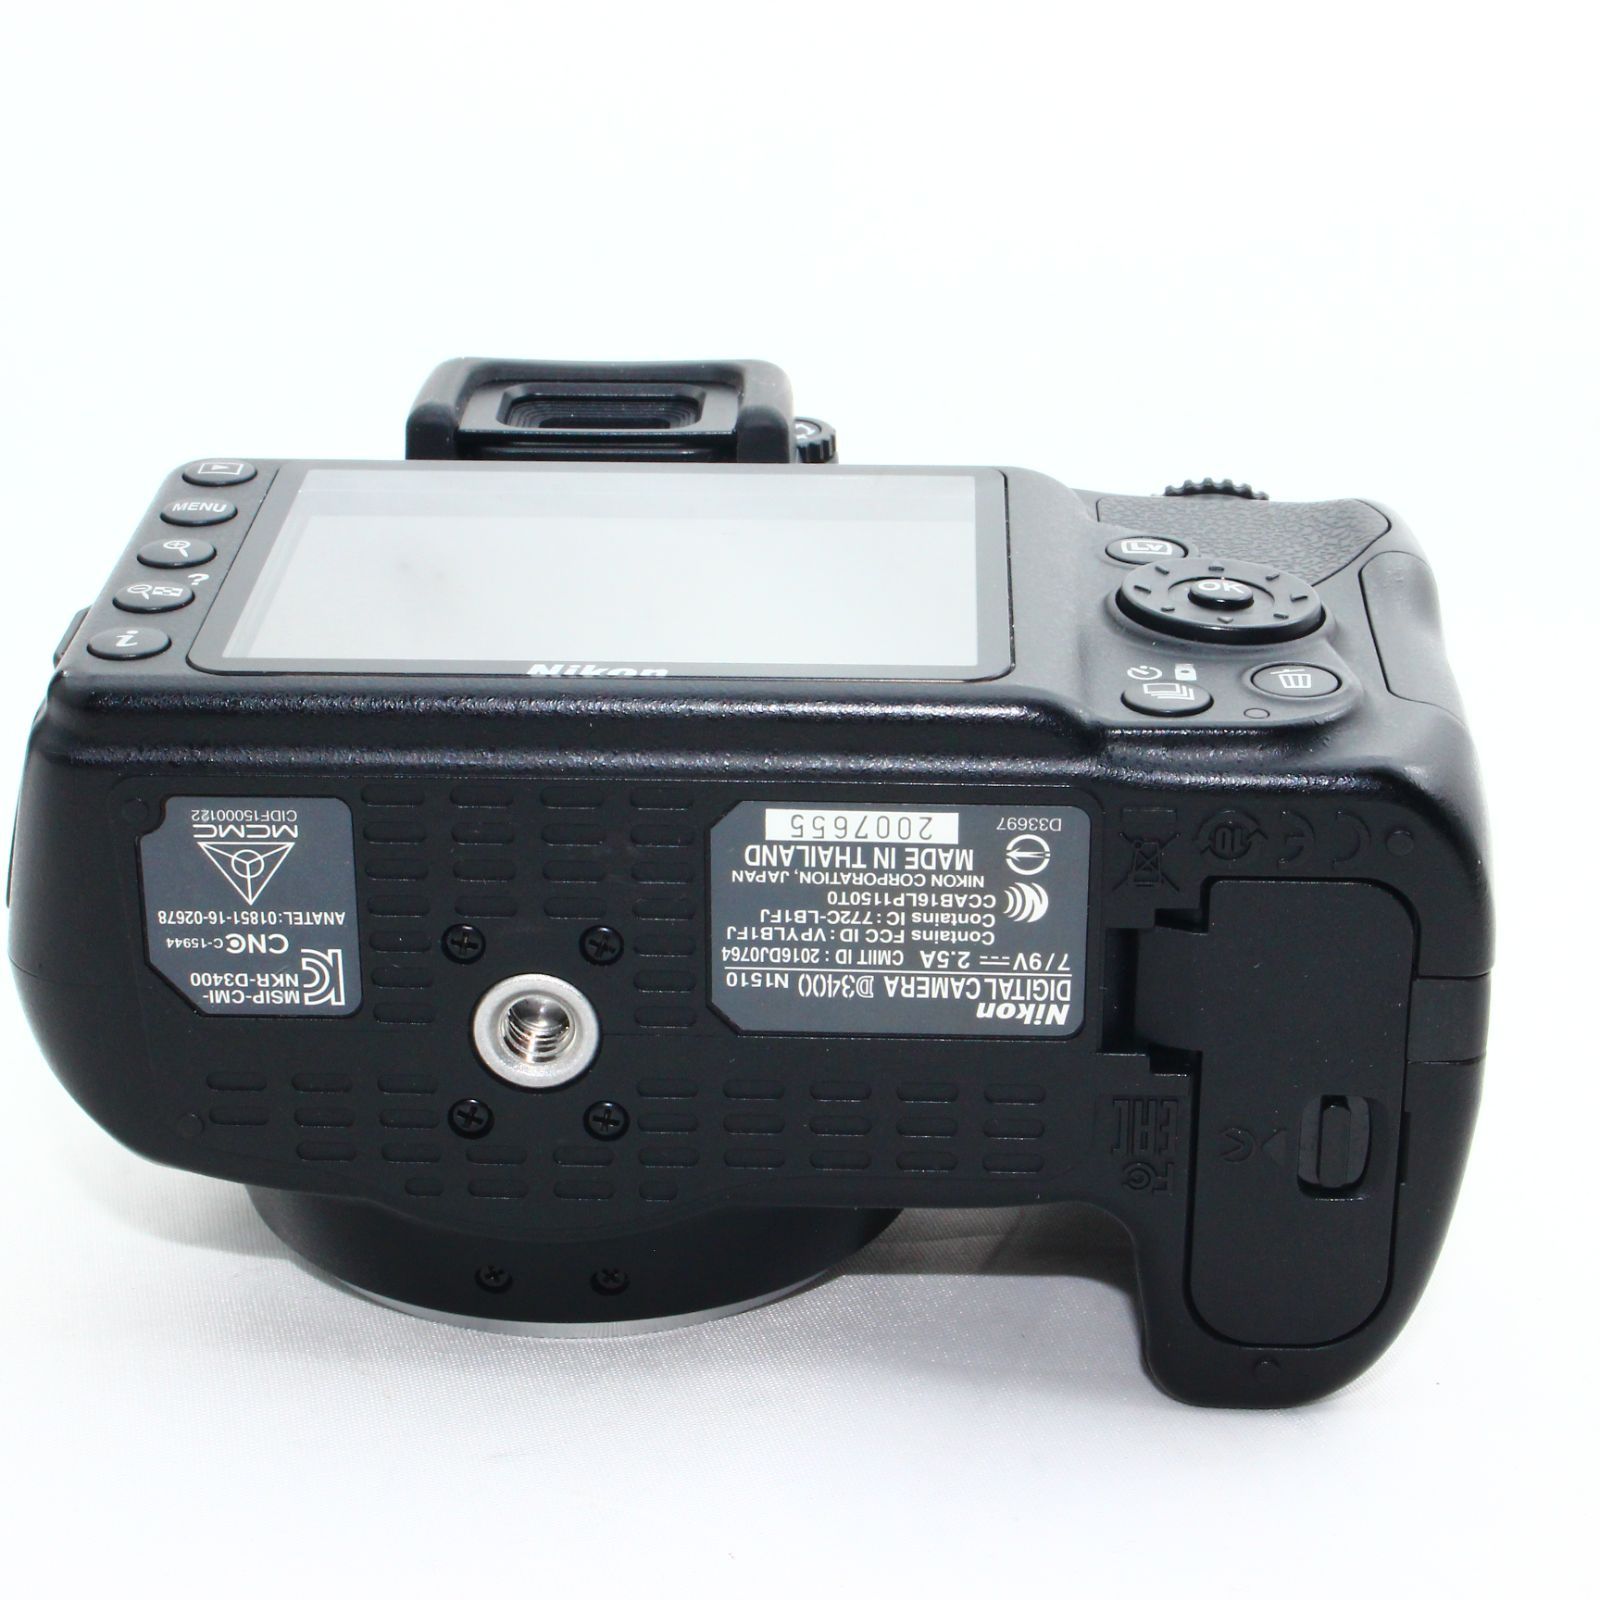 Nikon デジタル一眼レフカメラ D3400 ボディー ブラック D3400BK - メルカリ